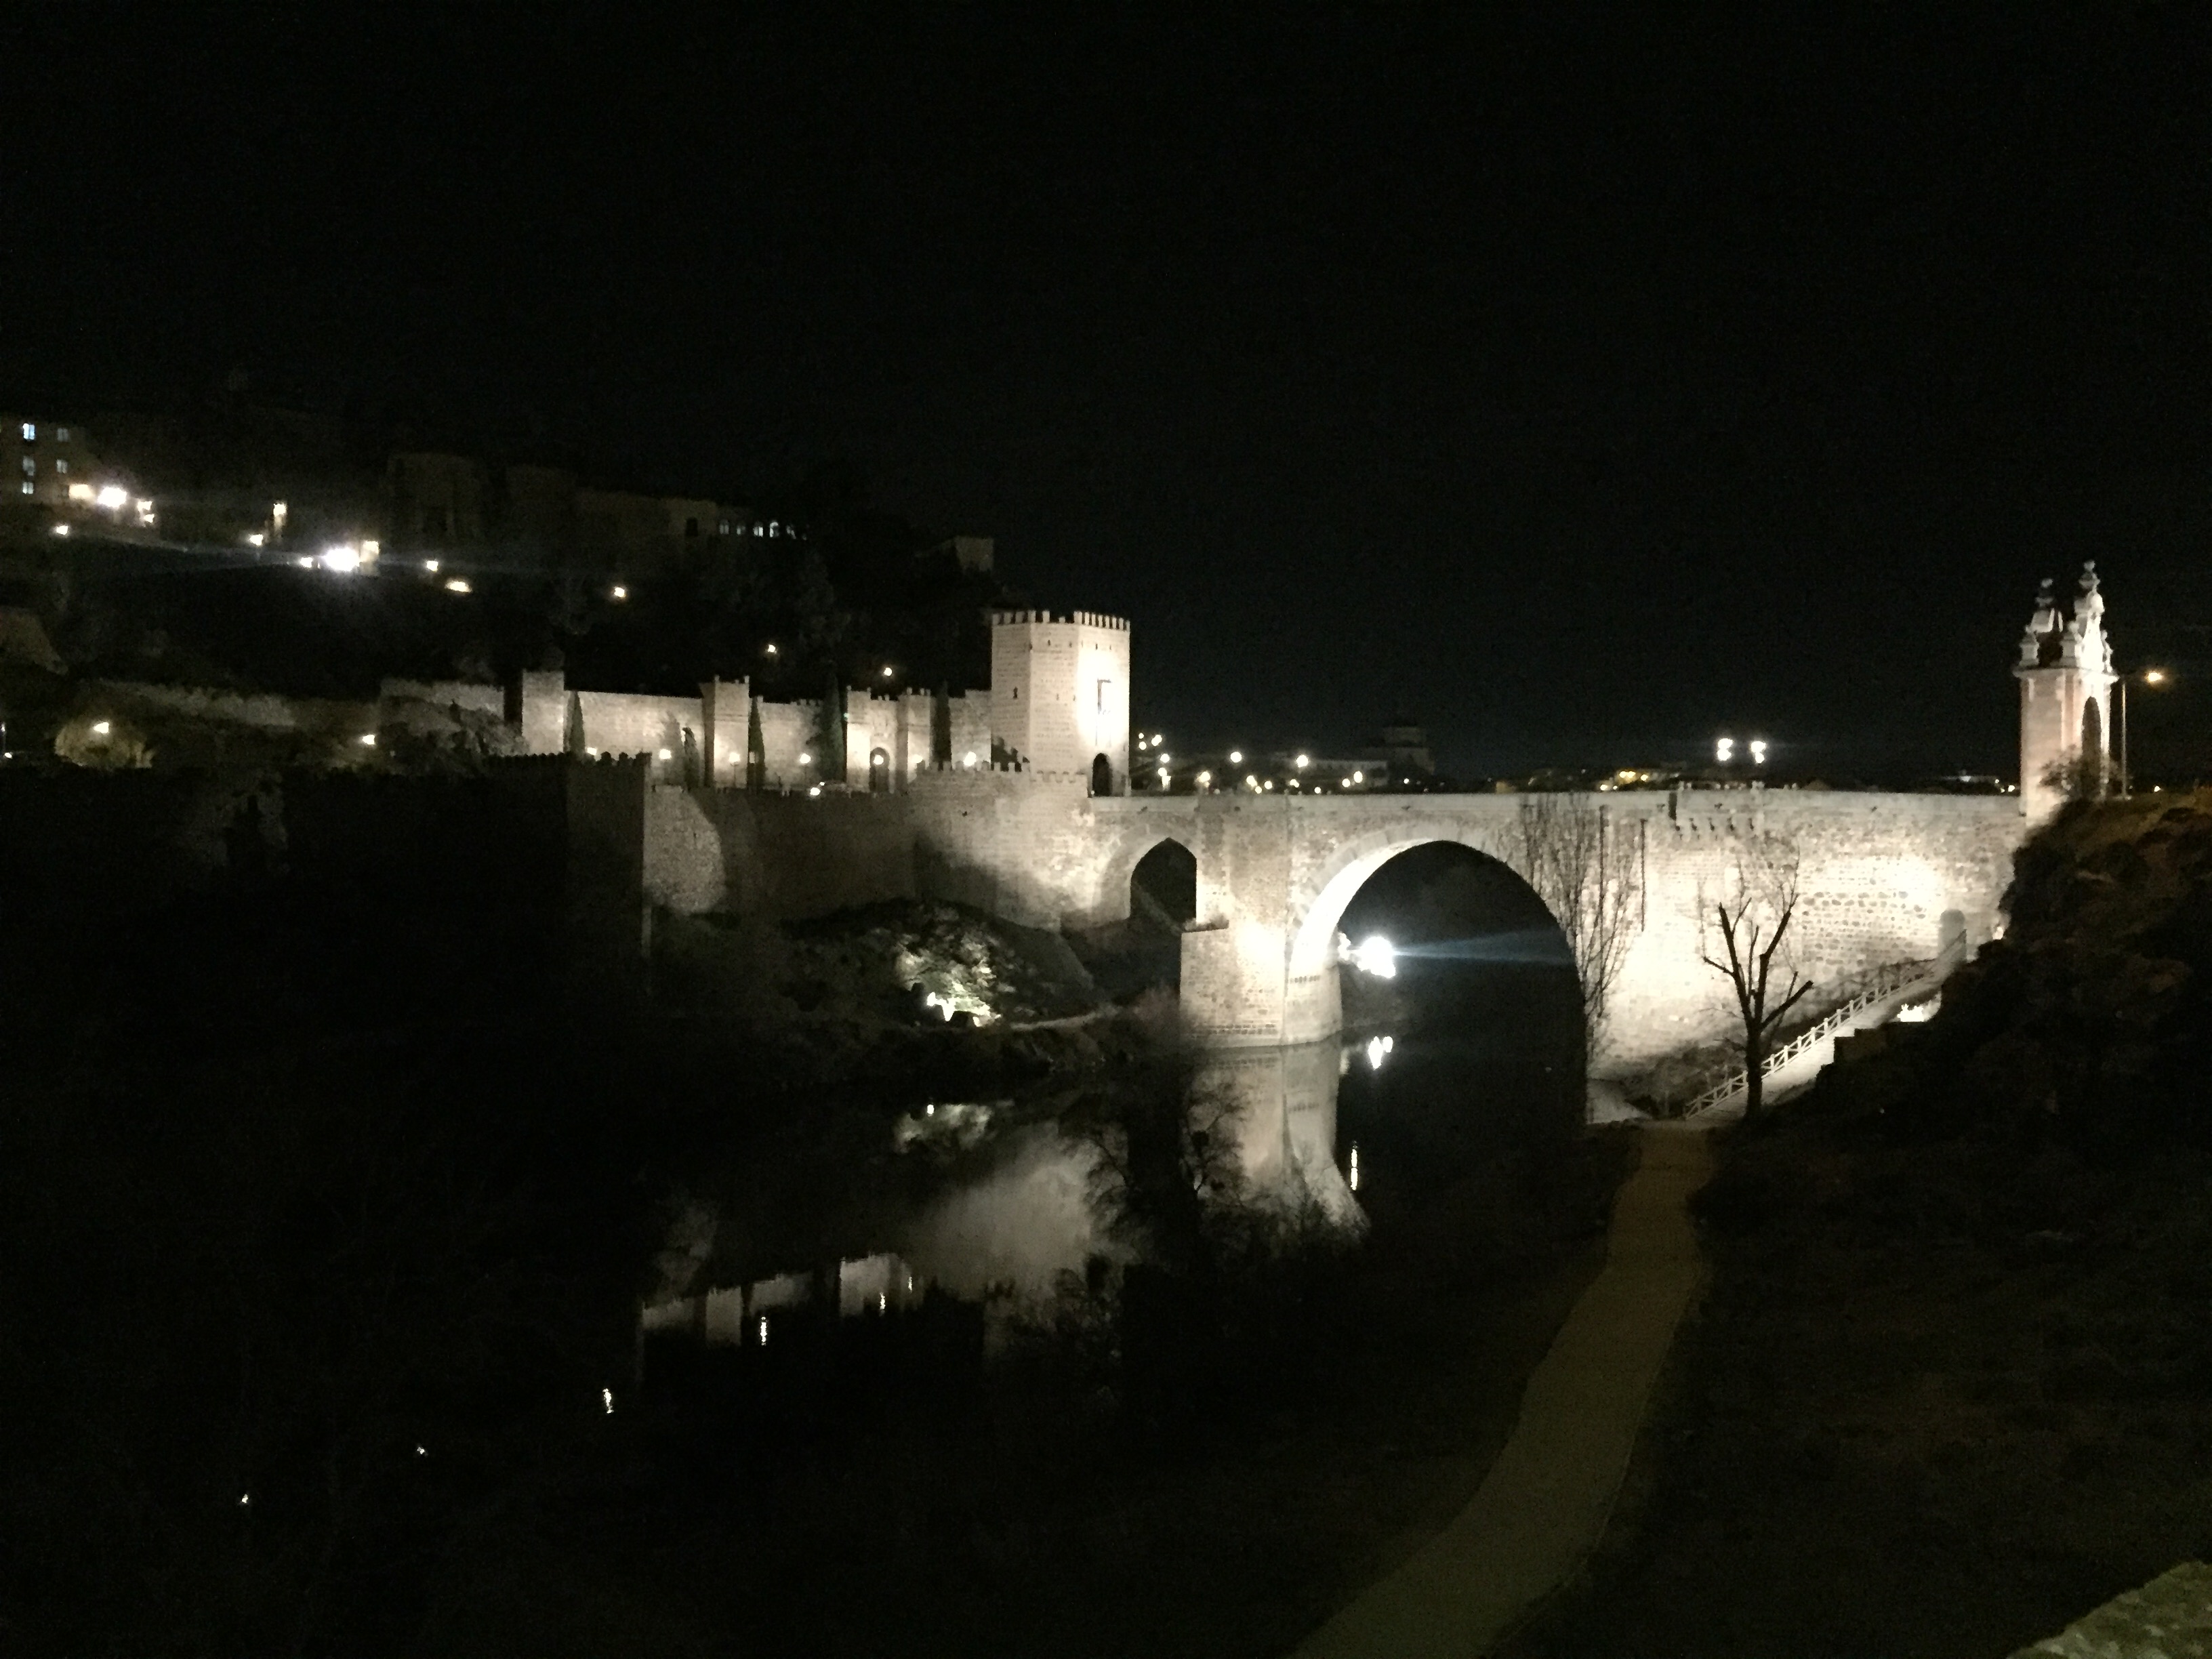 Signify participa en la iluminación conectada para el puente de Alcántara en Toledo